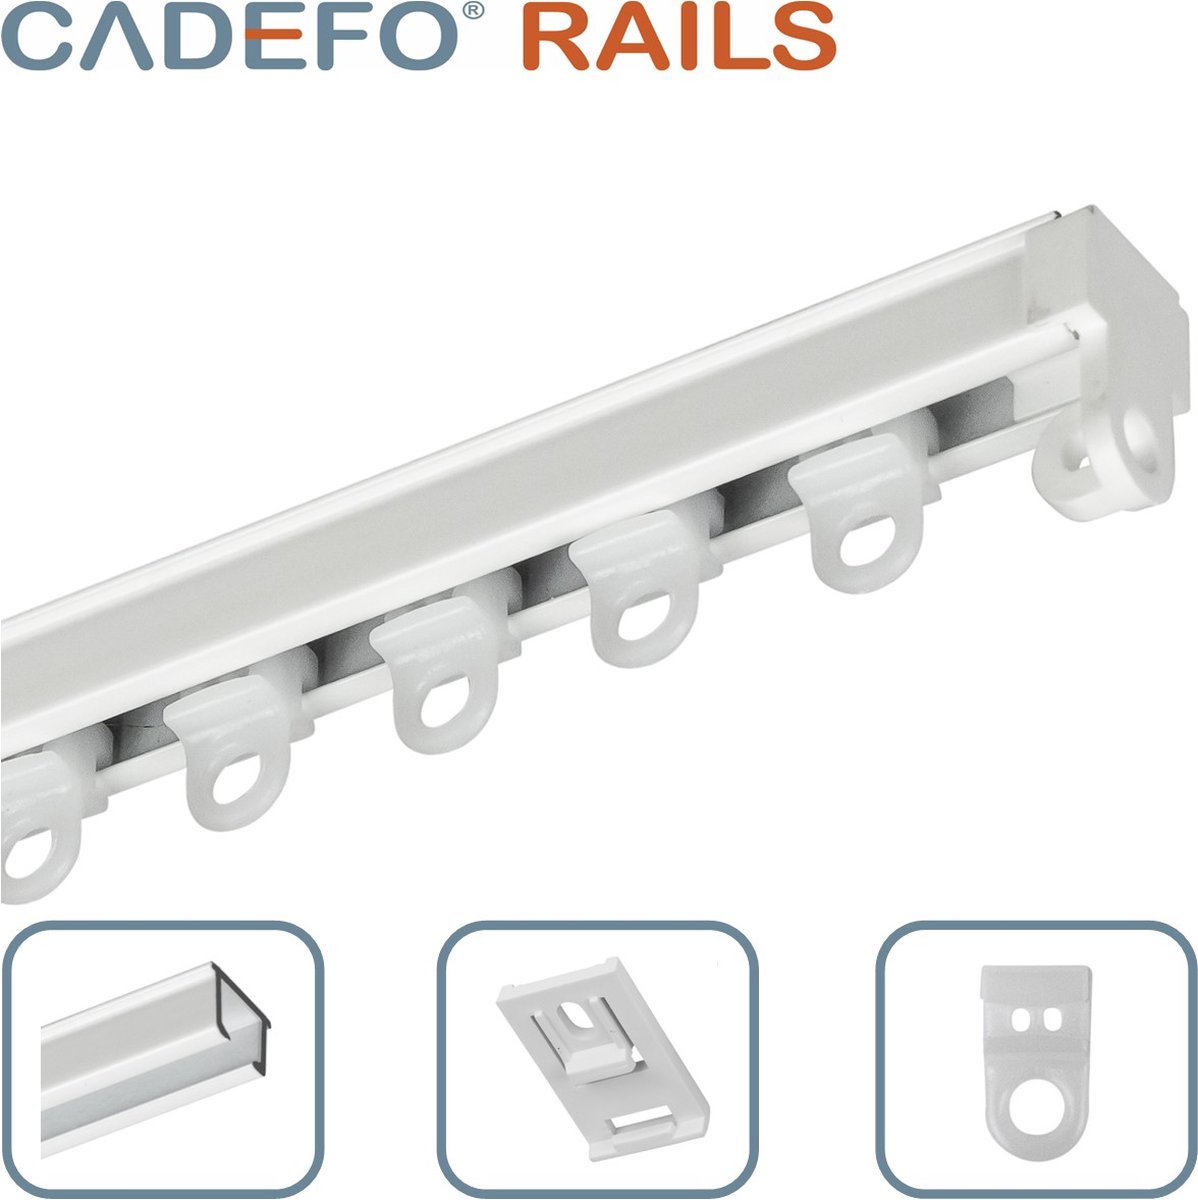 CADEFO RAILS (351 - 400 cm) Gordijnrails - Compleet op maat! - UIT 1 STUK - Leverbaar tot 6 meter - Plafondbevestiging - Lengte 365 cm